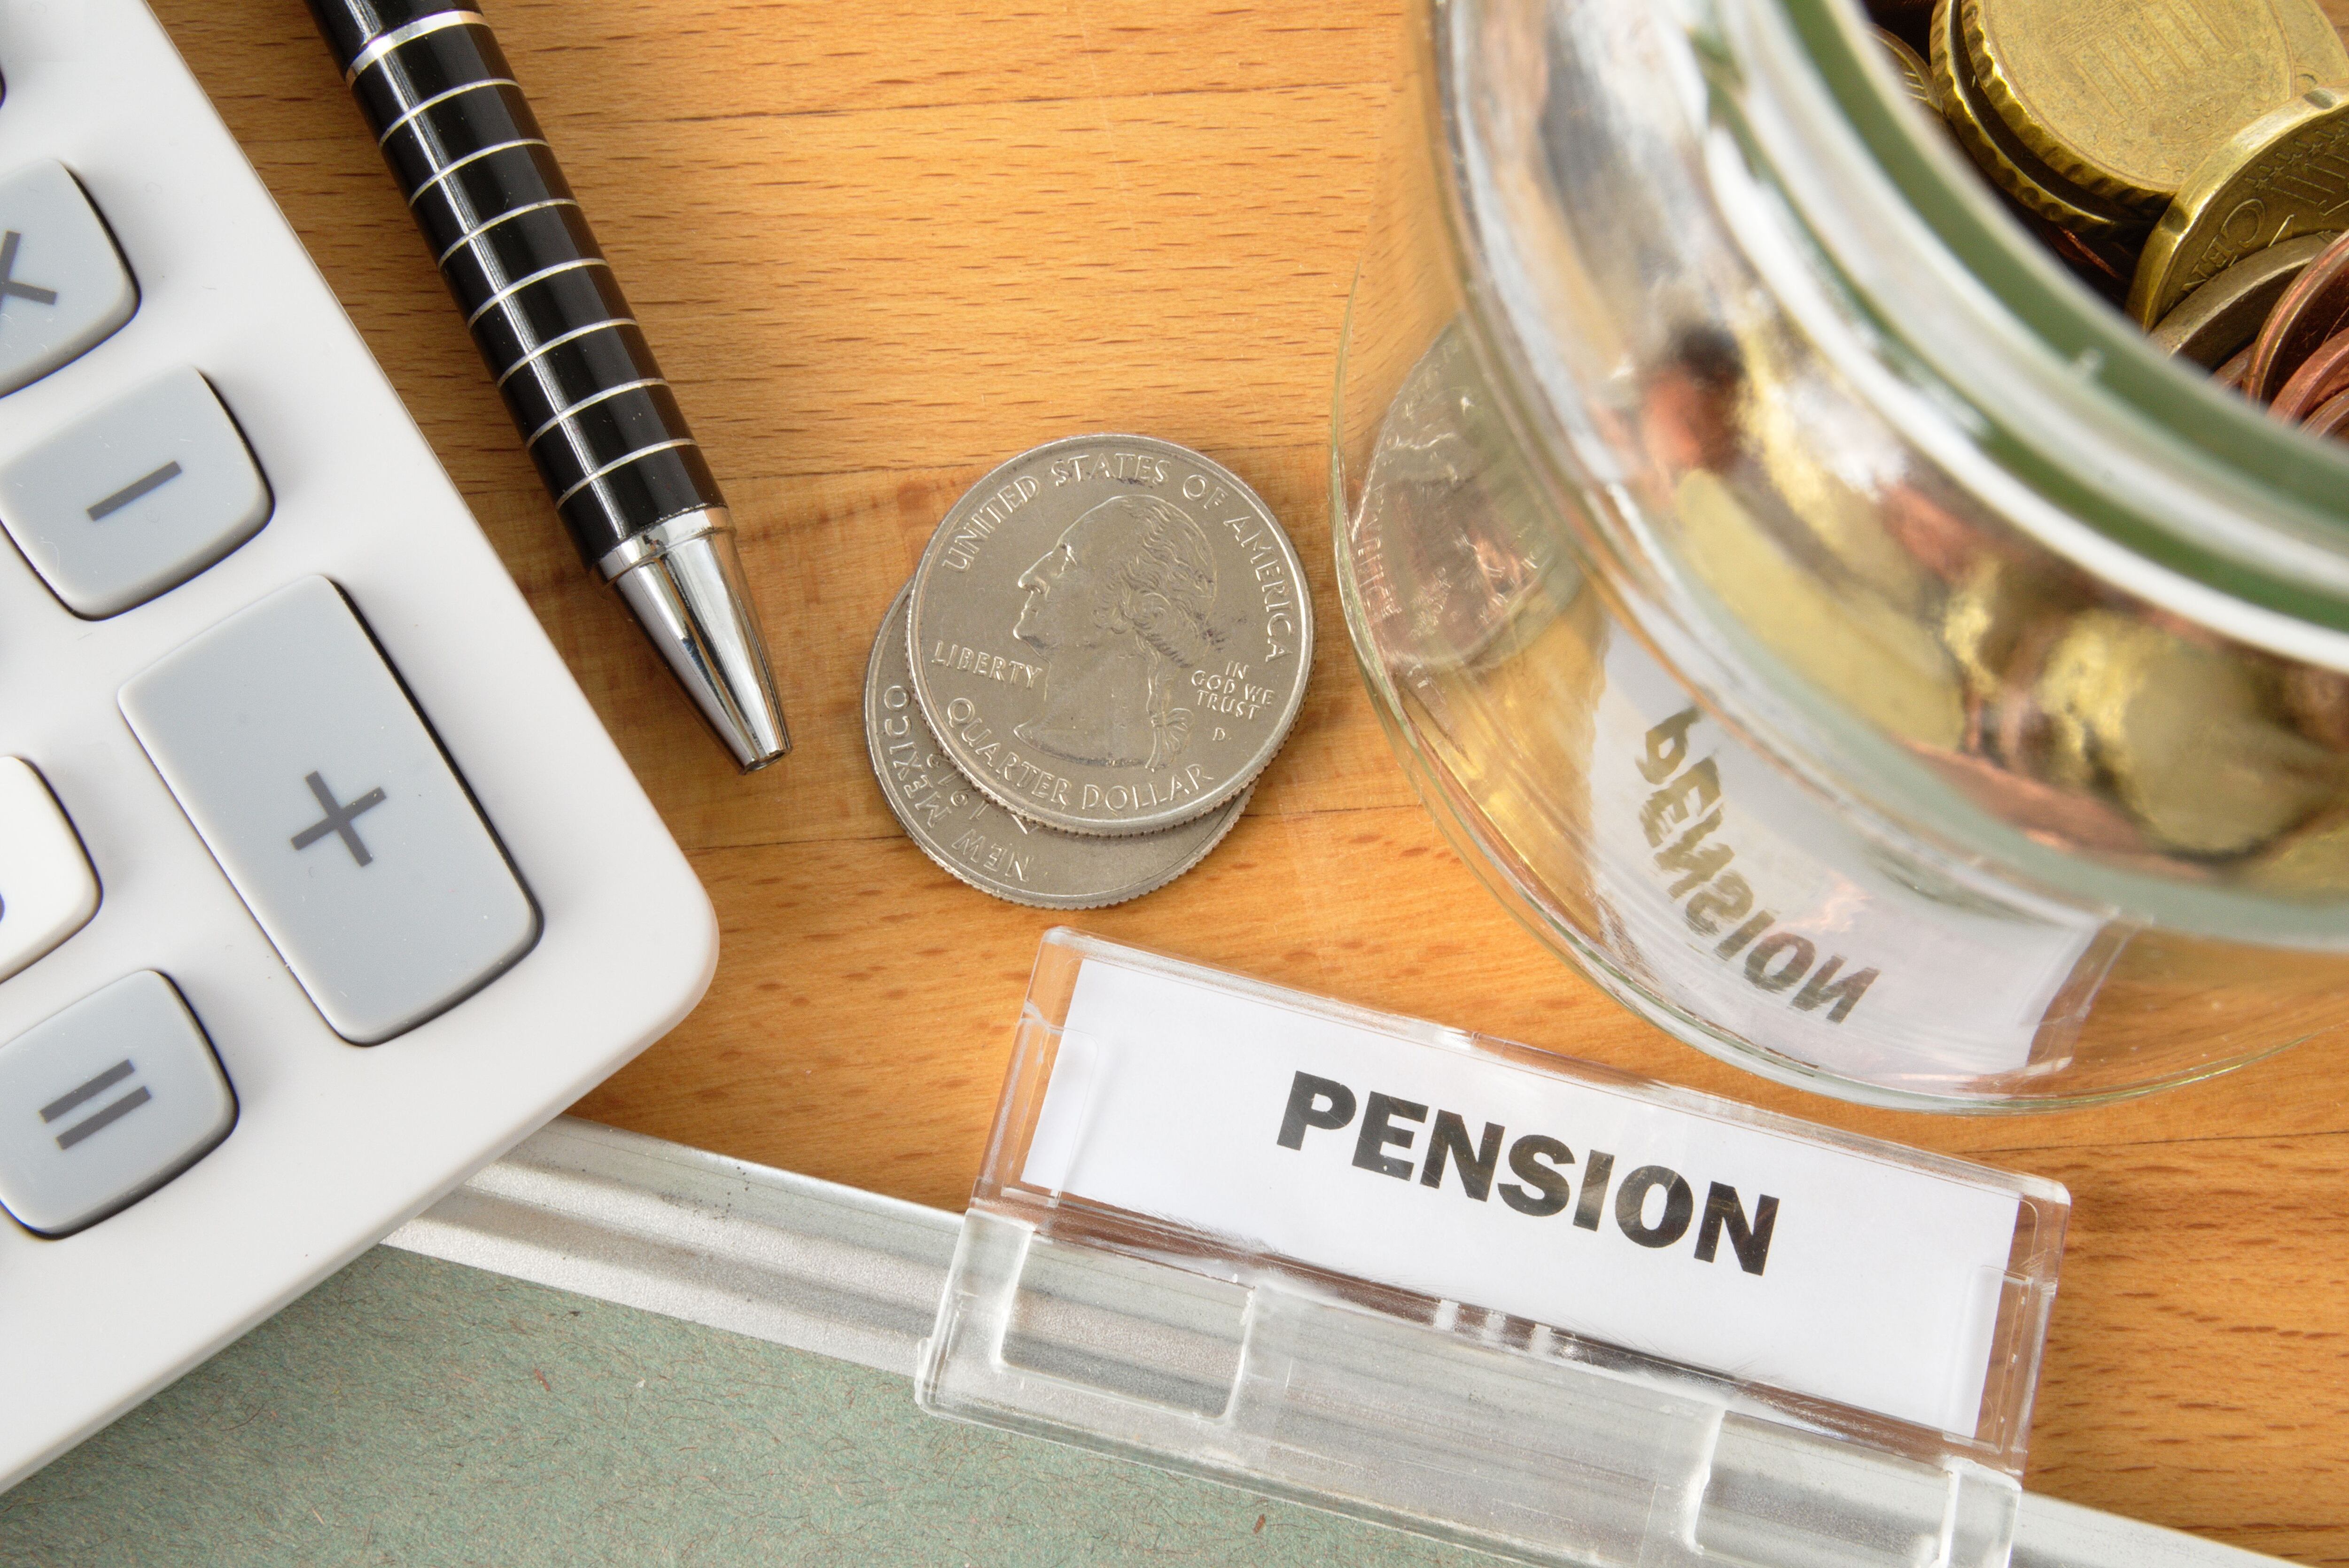 La Supén determinó que las OPC no son las responsables de las pérdidas en los fondos de pensiones porque han efectuado inversiones apegadas a la normativa regulatoria y sin considerarlas complejas.